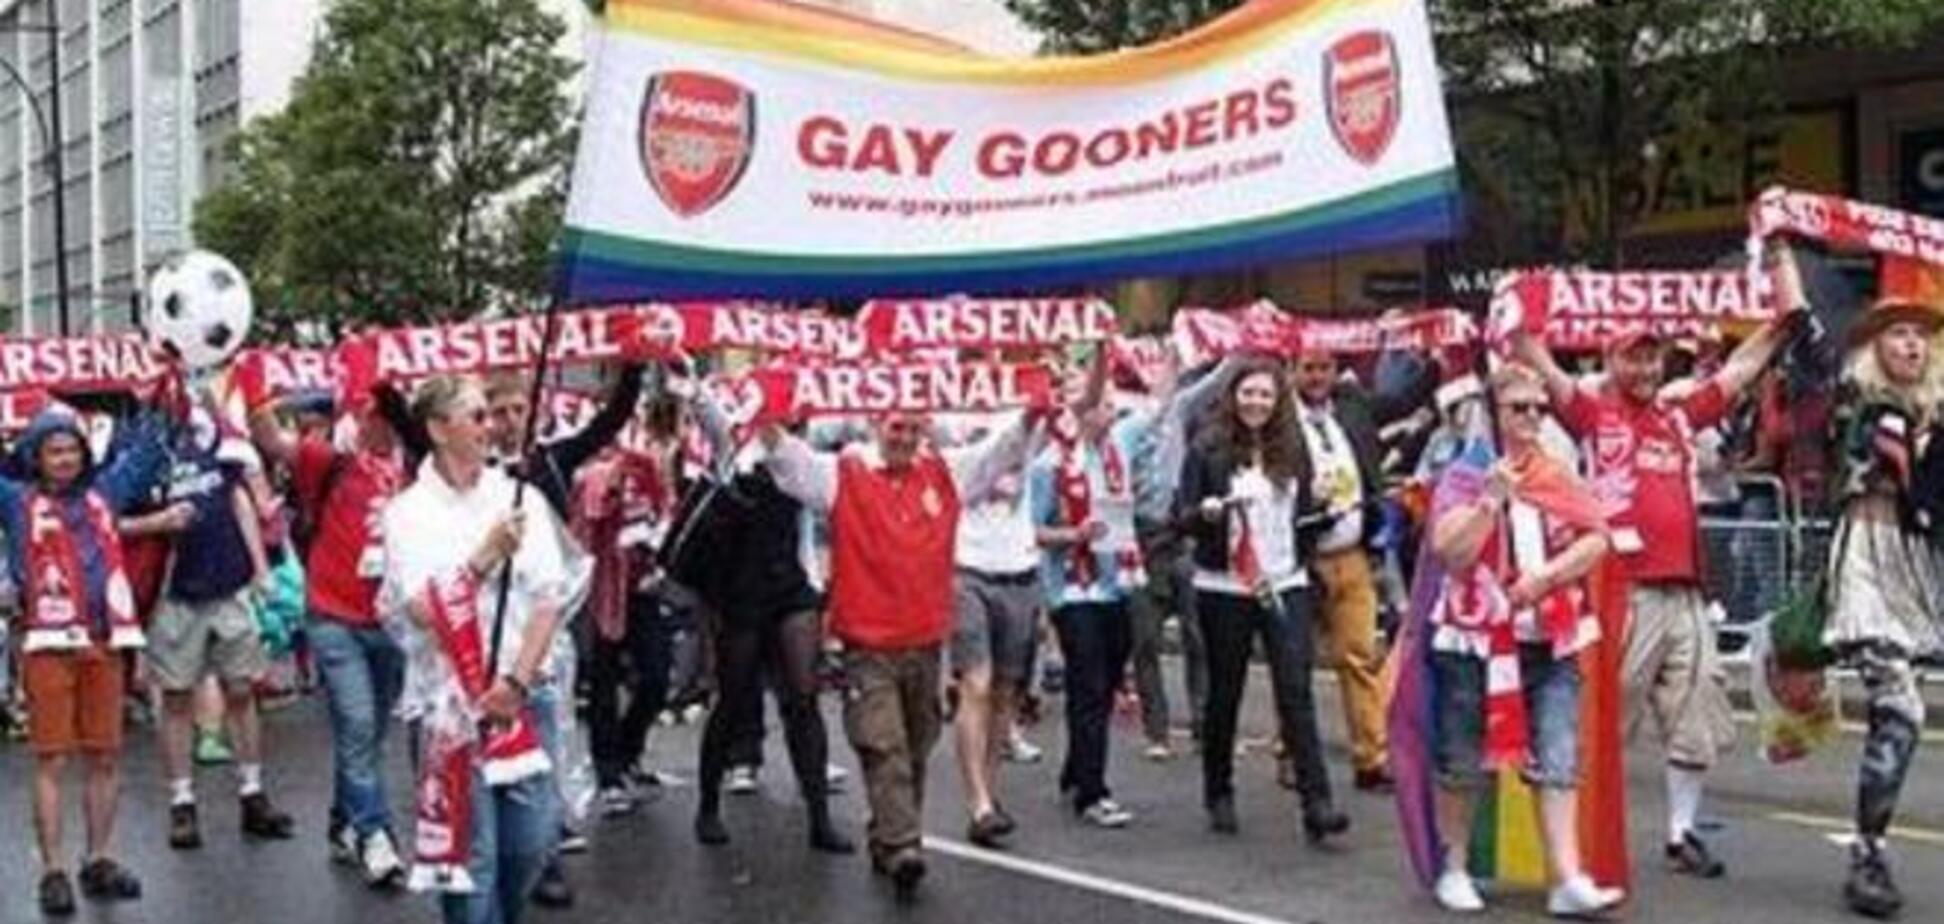 'Арсенал' поддержал гей-парад своих болельщиков